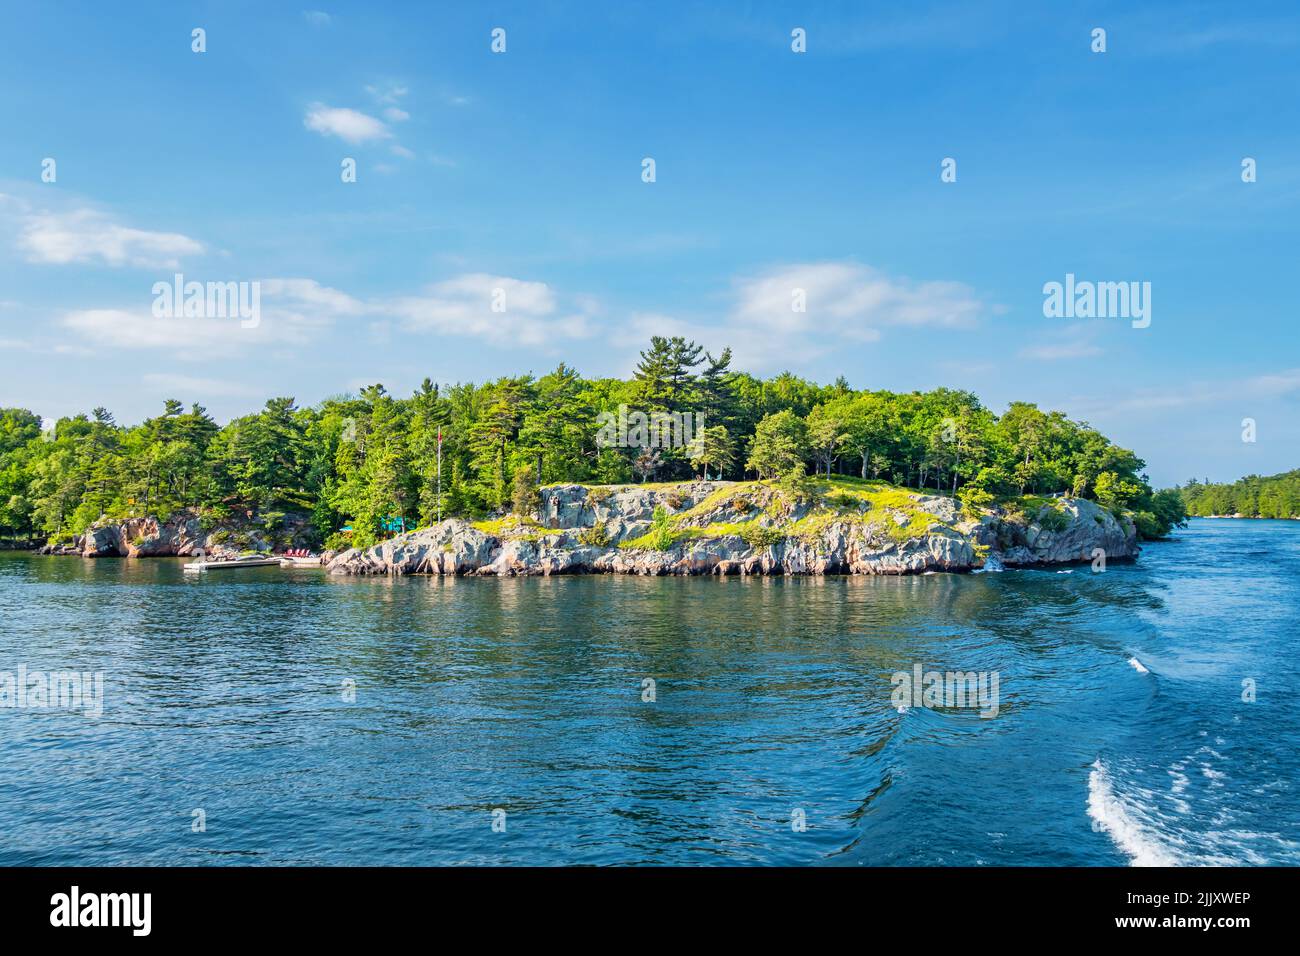 E il fiume St Lawrence nella regione delle Thousand Islands tra Ontario, Canada e New York state, USA Foto Stock